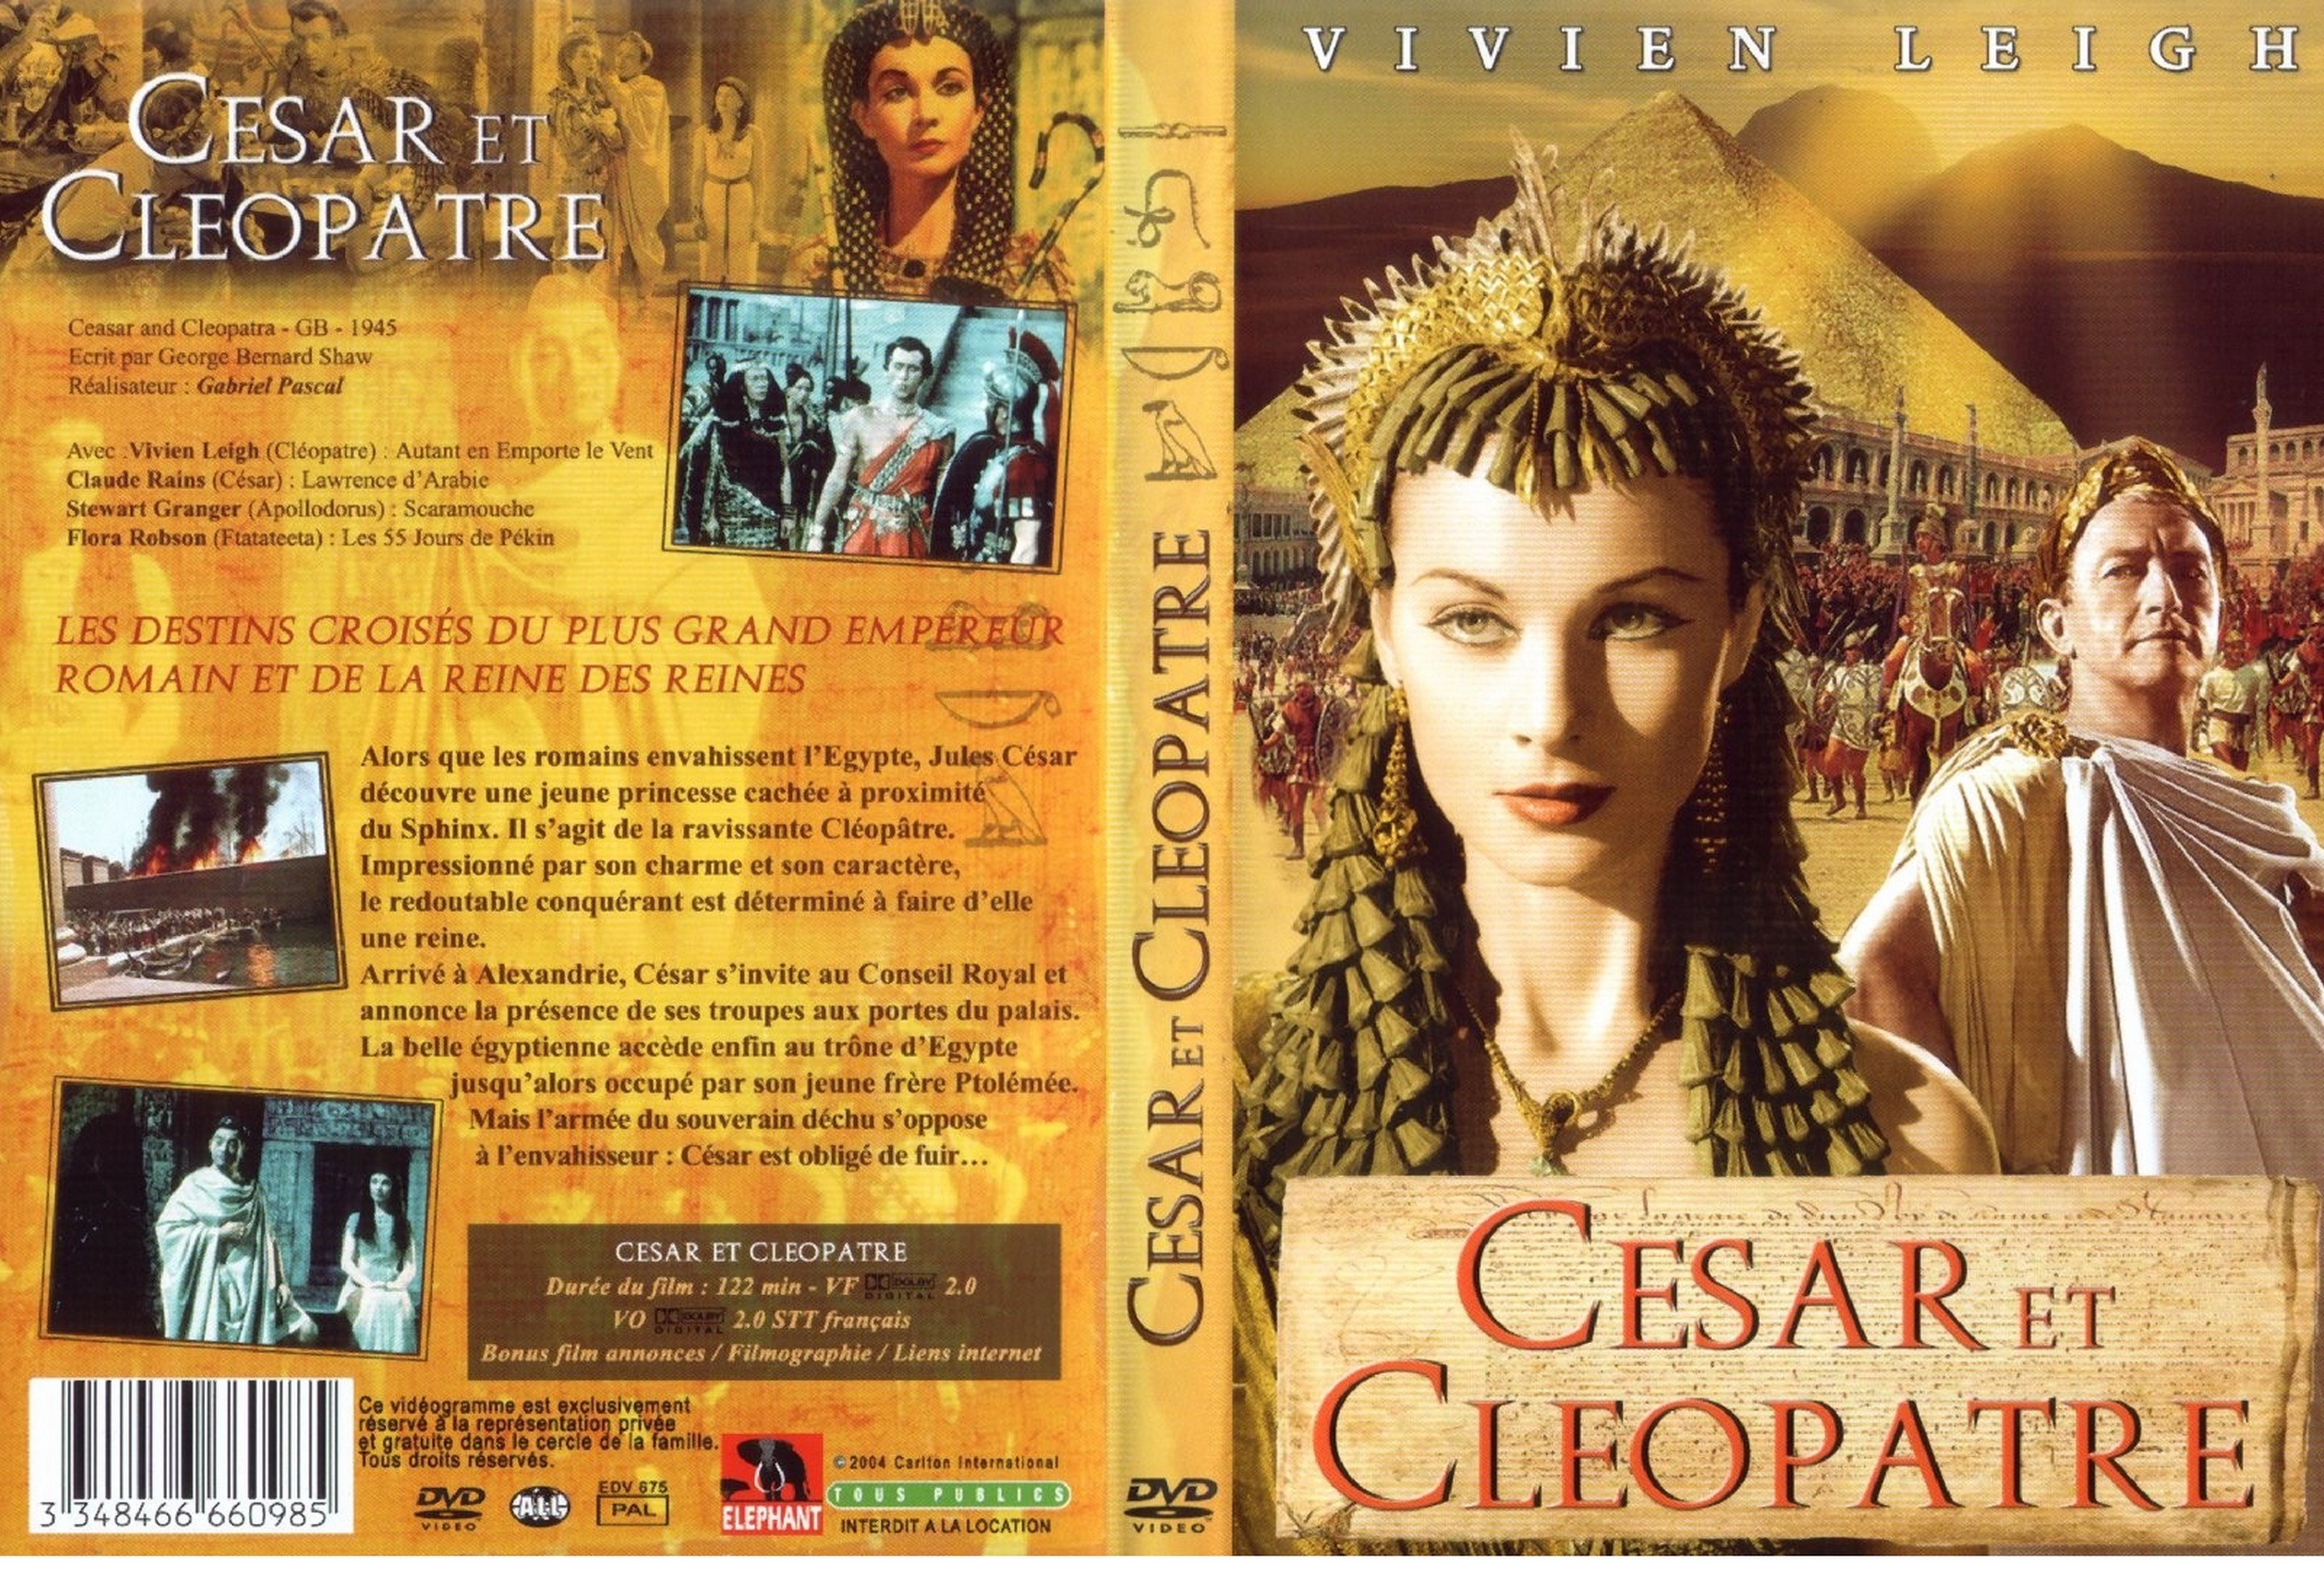 Jaquette DVD Csar et Clopatre